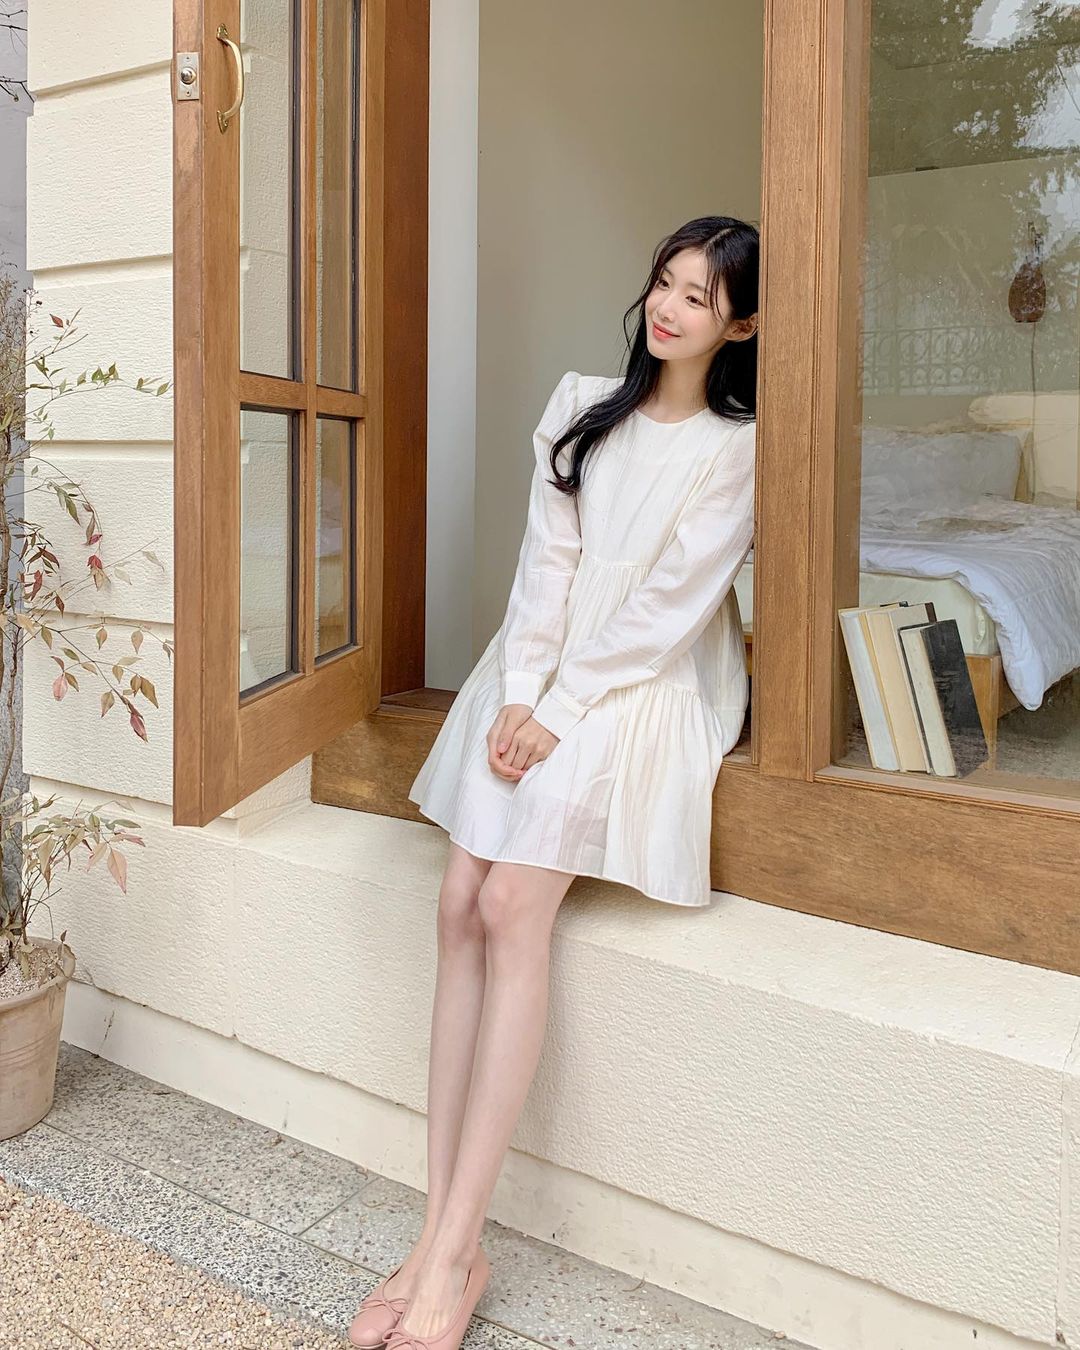 Hè đến là gái Hàn lại diện đủ kiểu váy trắng siêu trẻ xinh và tinh tế, xem mà muốn sắm cả 'lố' về nhà - Ảnh 6